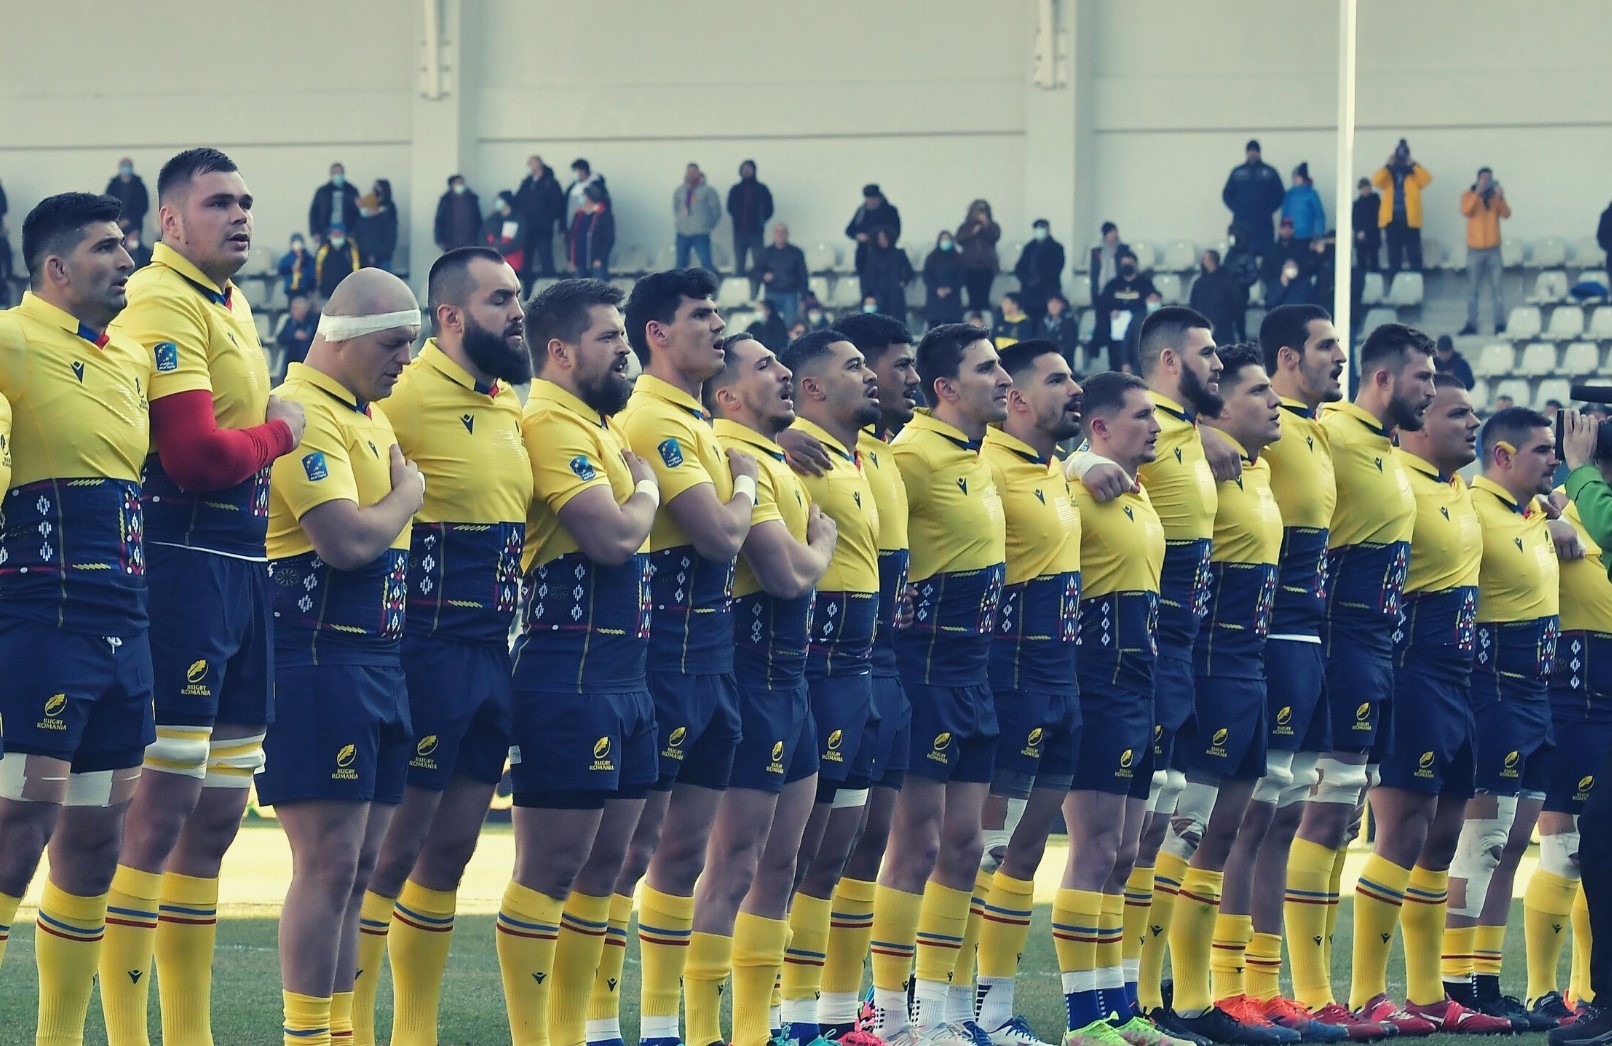 Naționala României la rugby s-a calificat la Campionatul Mondial, după ce Spania a fost descalificată. Foto: Rugby România - Facebook